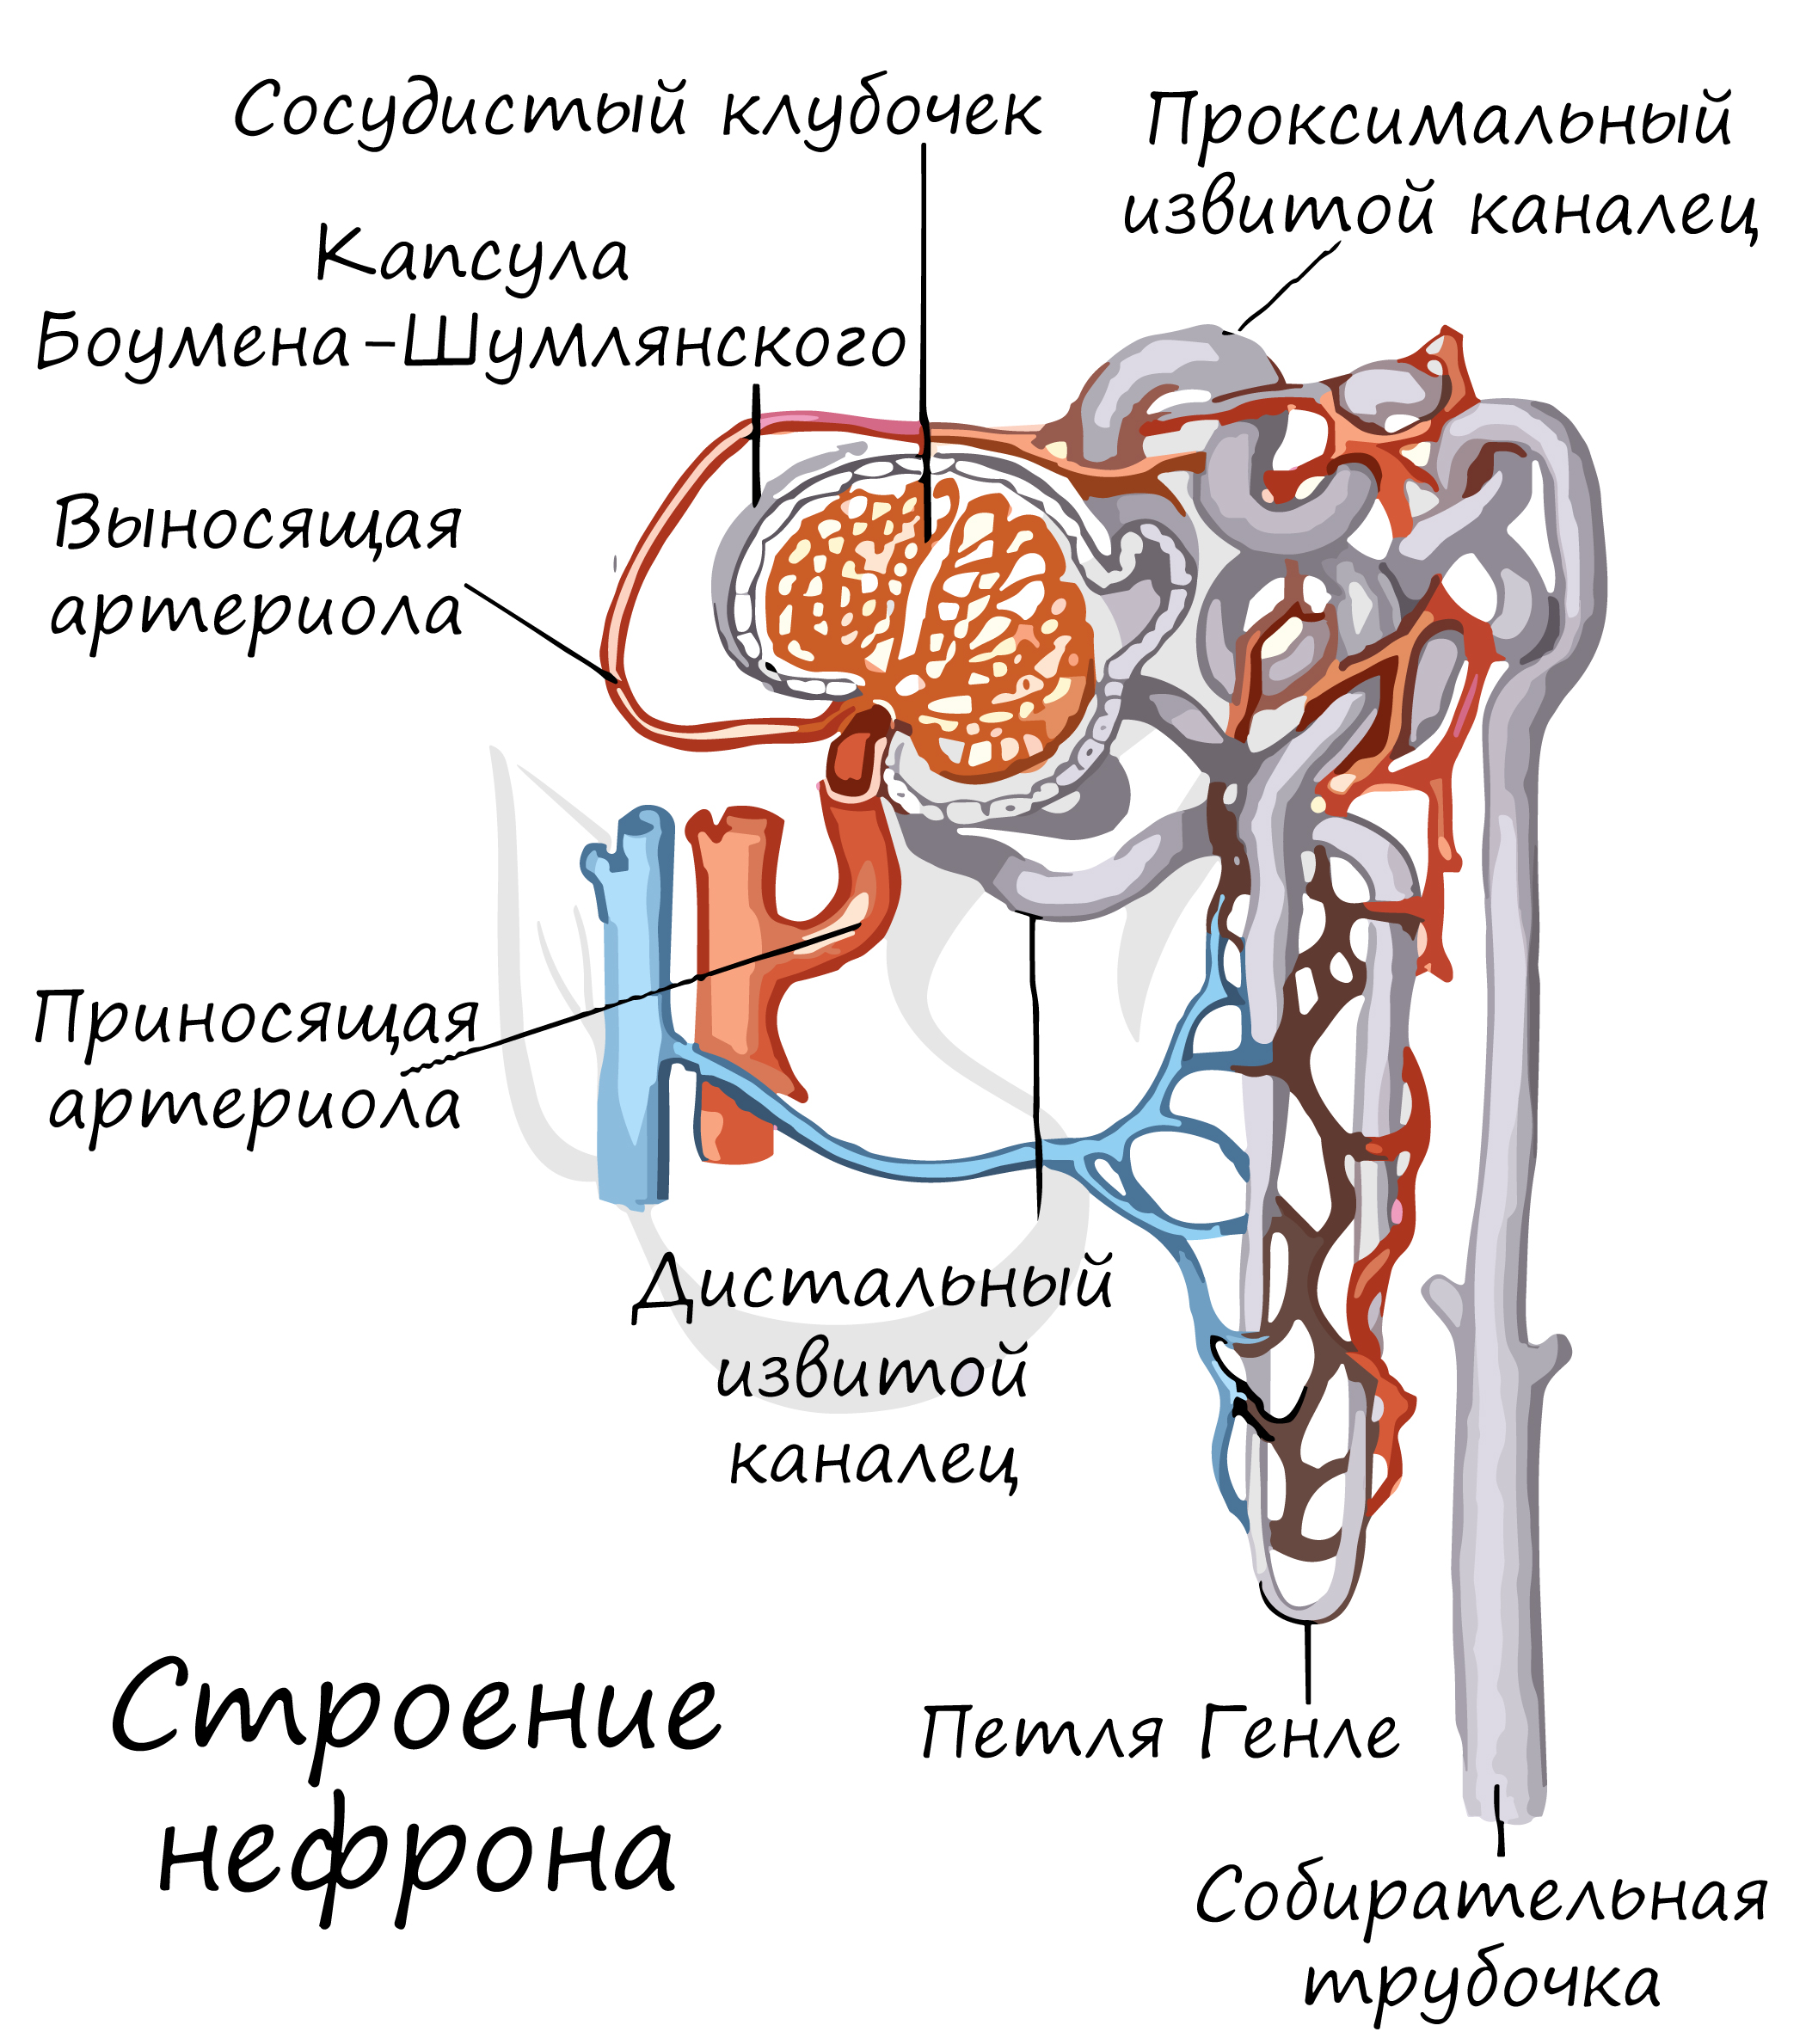 Где находятся капсулы нефрона. Выделительная система человека нефрон. Выносящая артериола нефрона. Мальпигиево тельце нефрона. Мочевыделительная система нефрон.